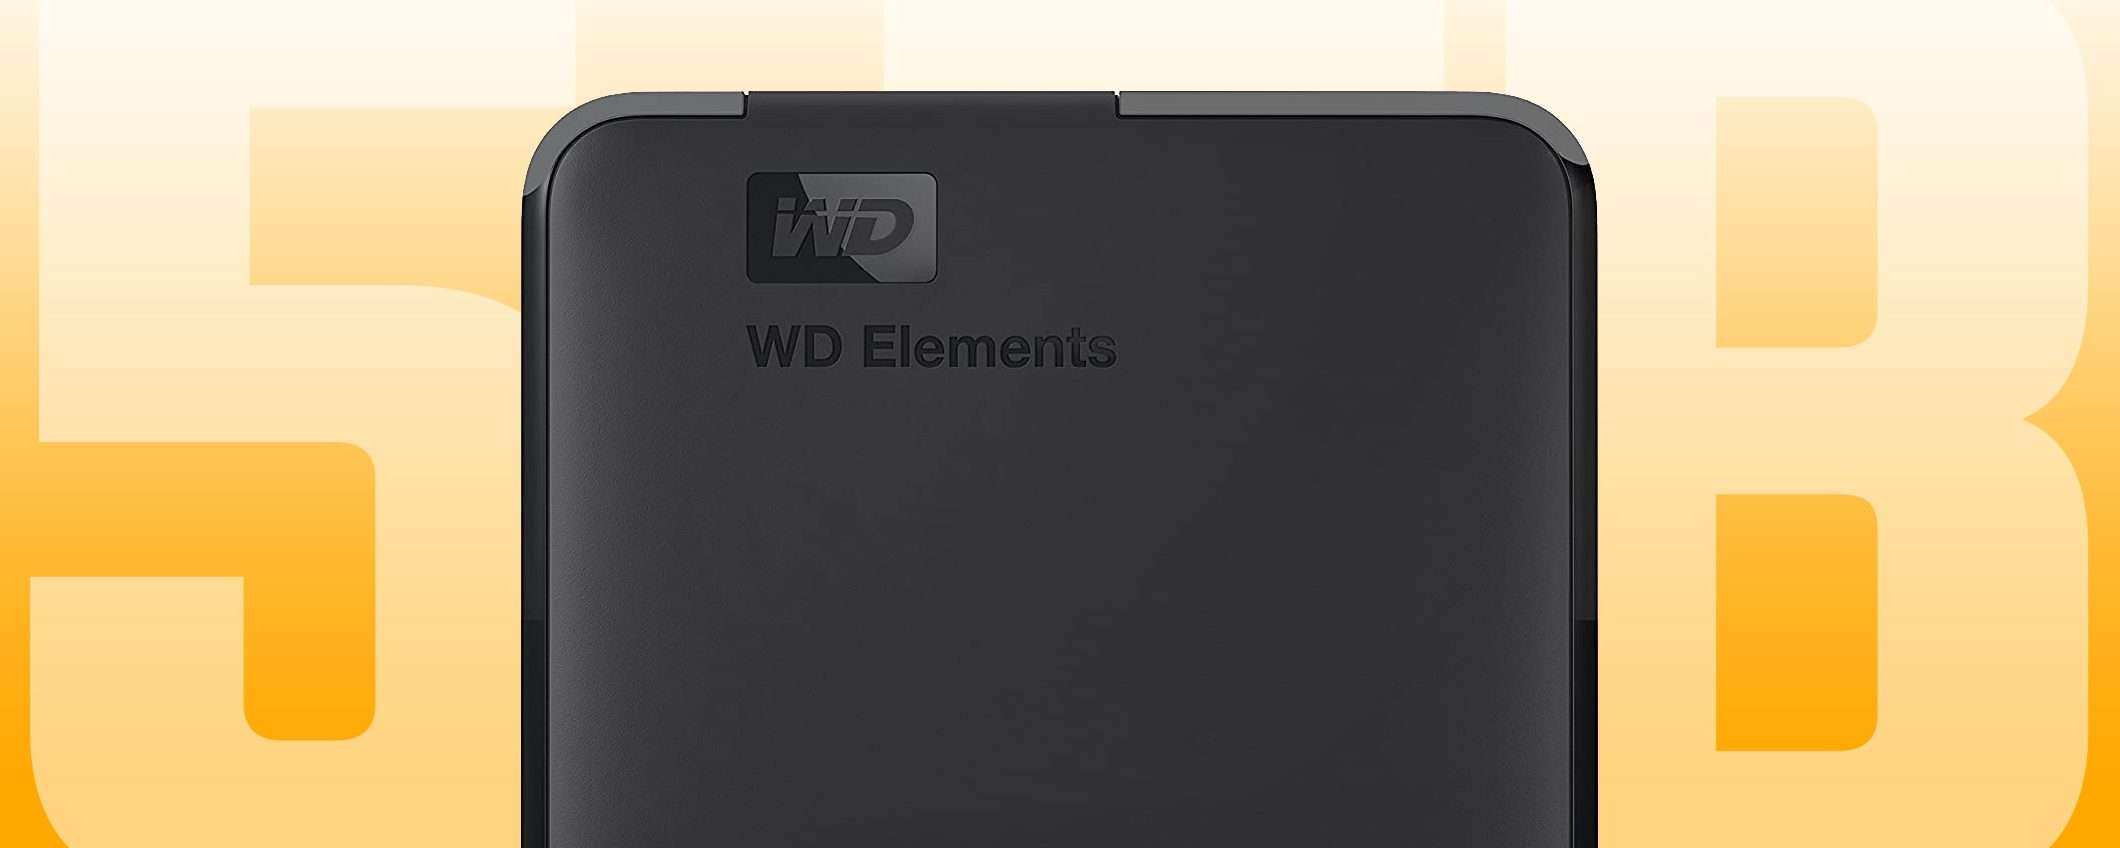 HDD esterno WD Elements Portable da 2TB: lo sconto del 39% fa scendere il prezzo a ben 73€